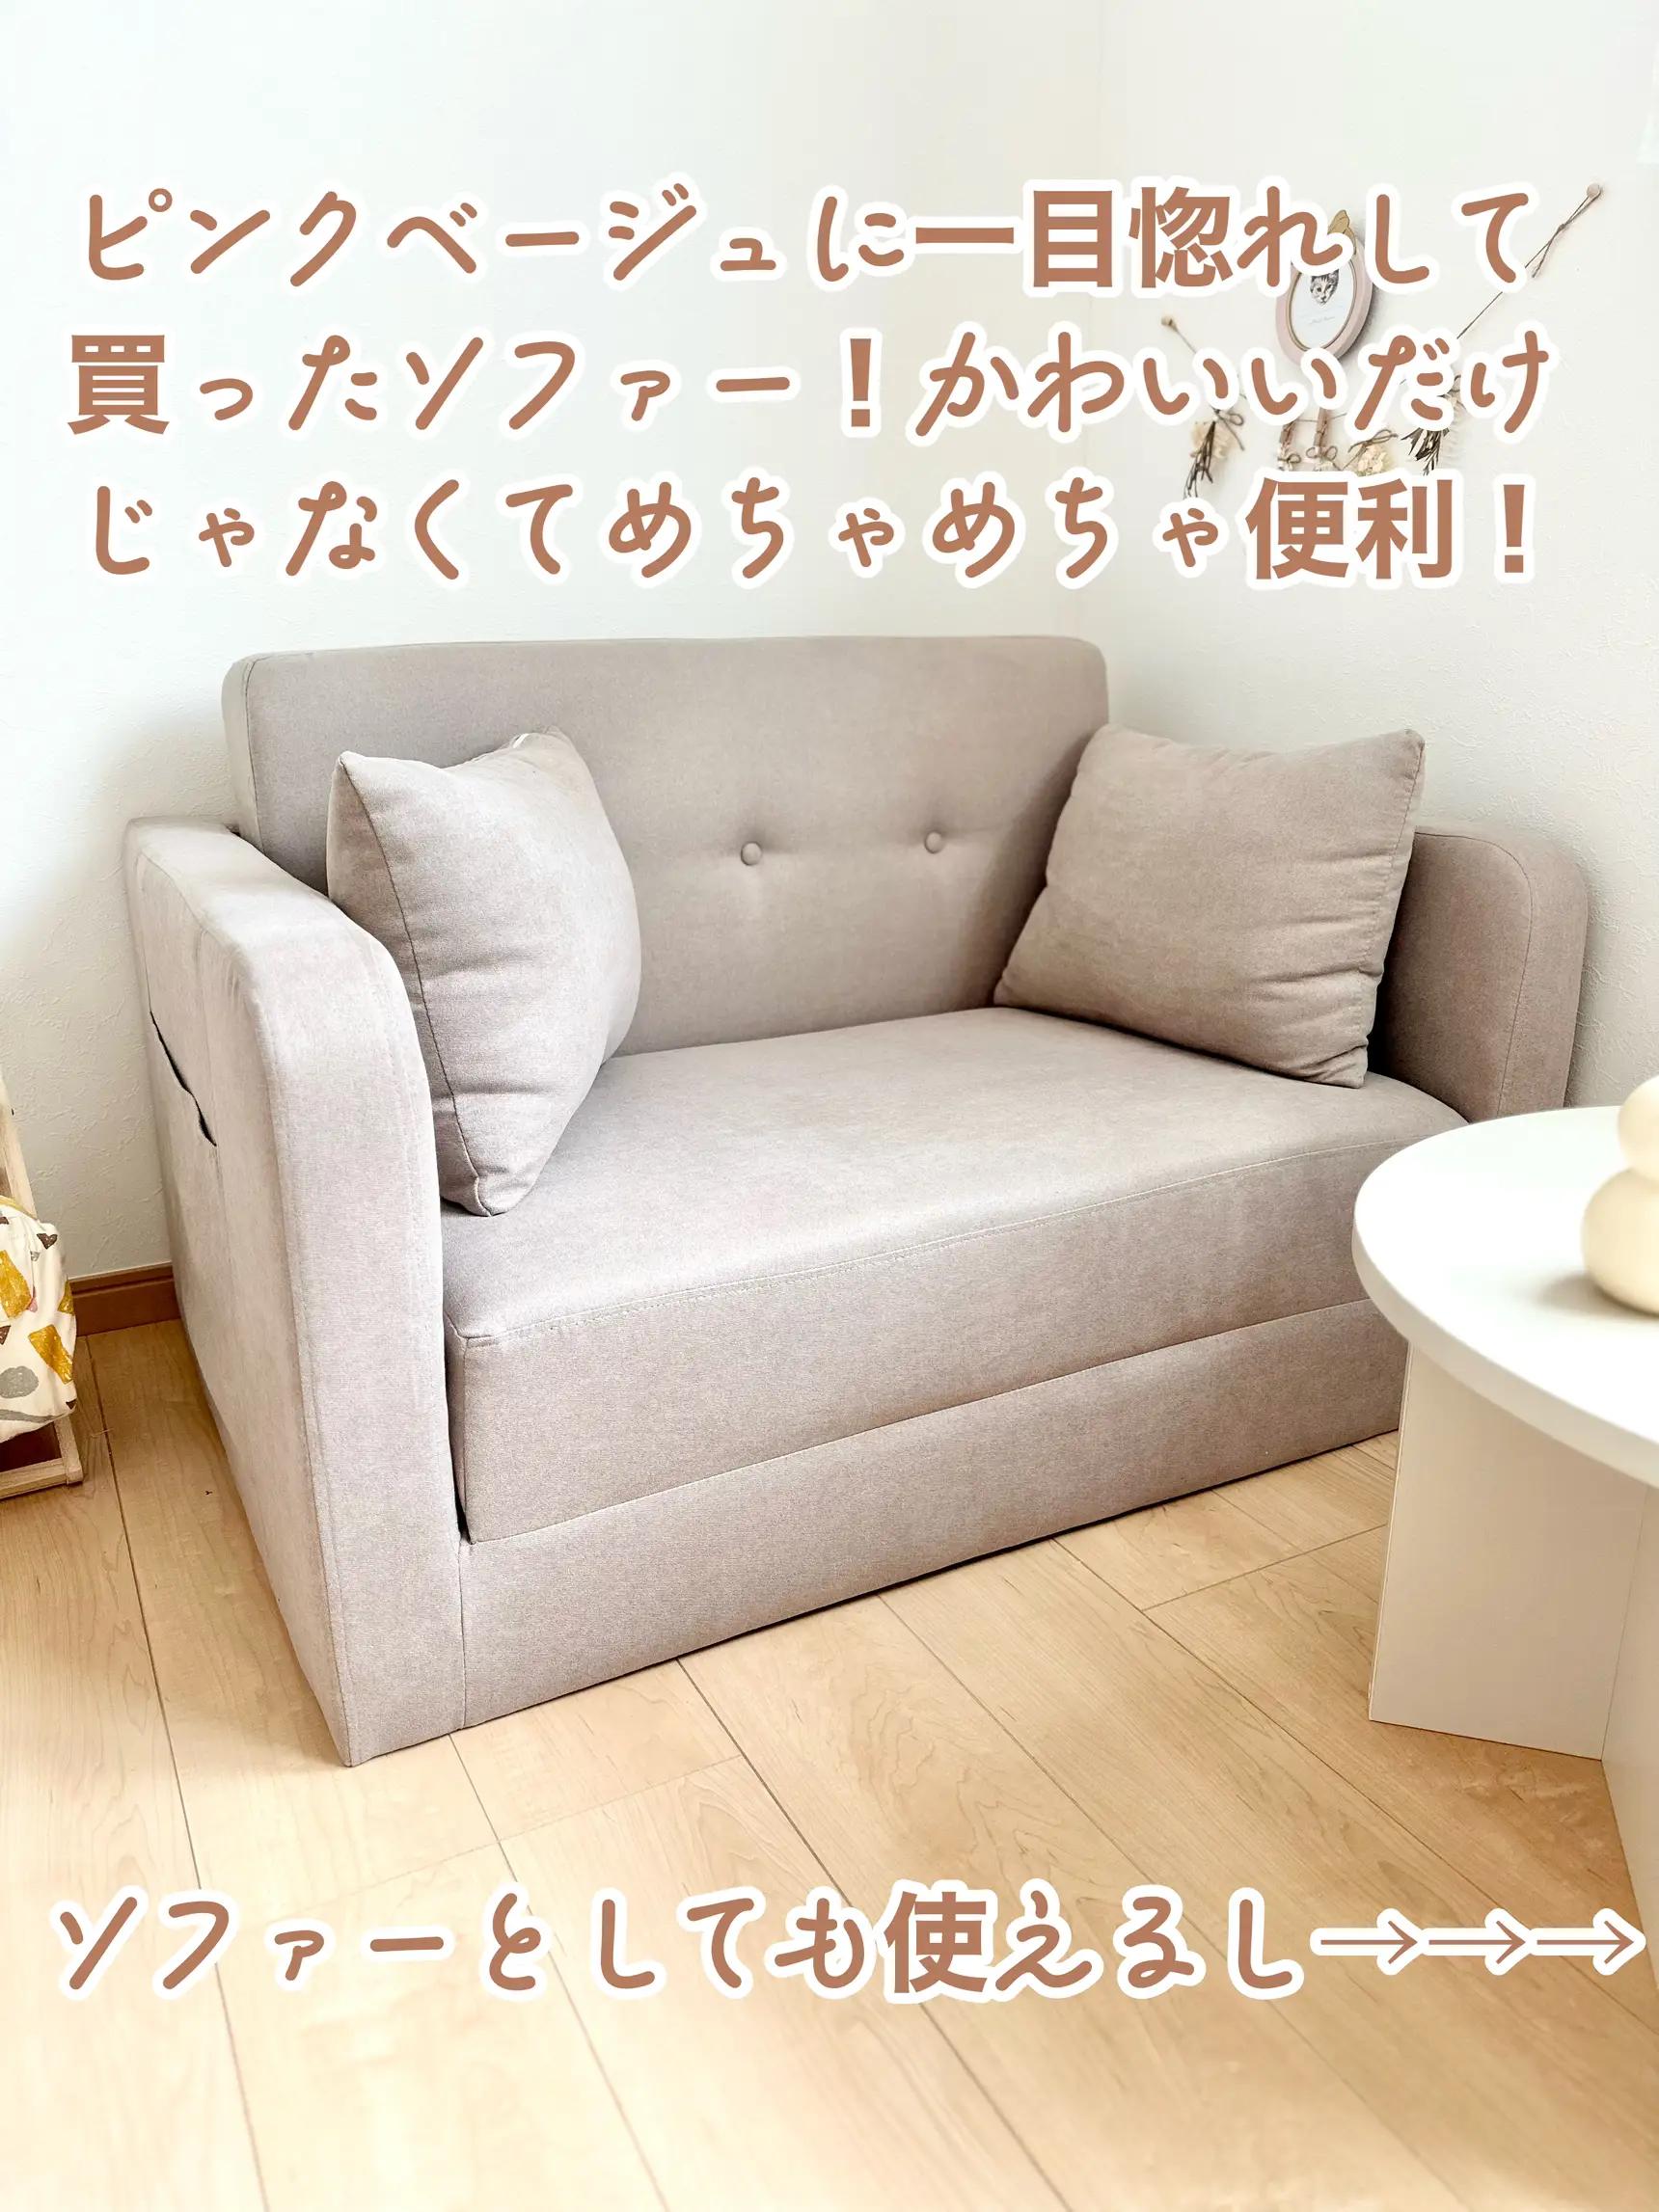 このソファーすごい！   りさ淡色×プチプラが投稿したフォトブック